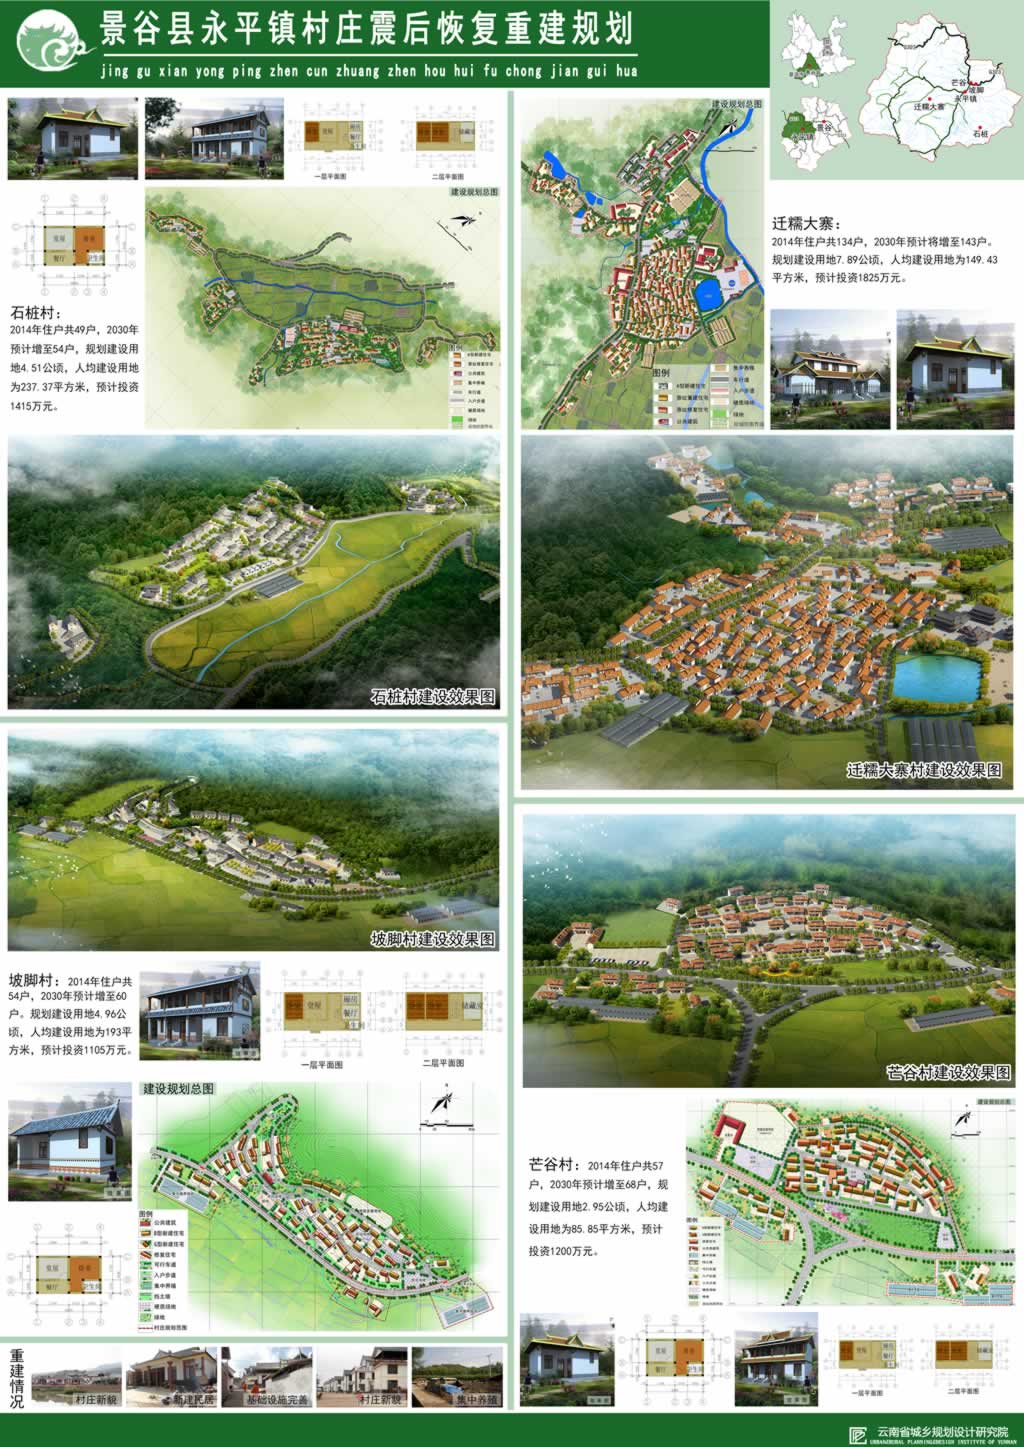 景谷县永平镇村庄震后恢复重建规划